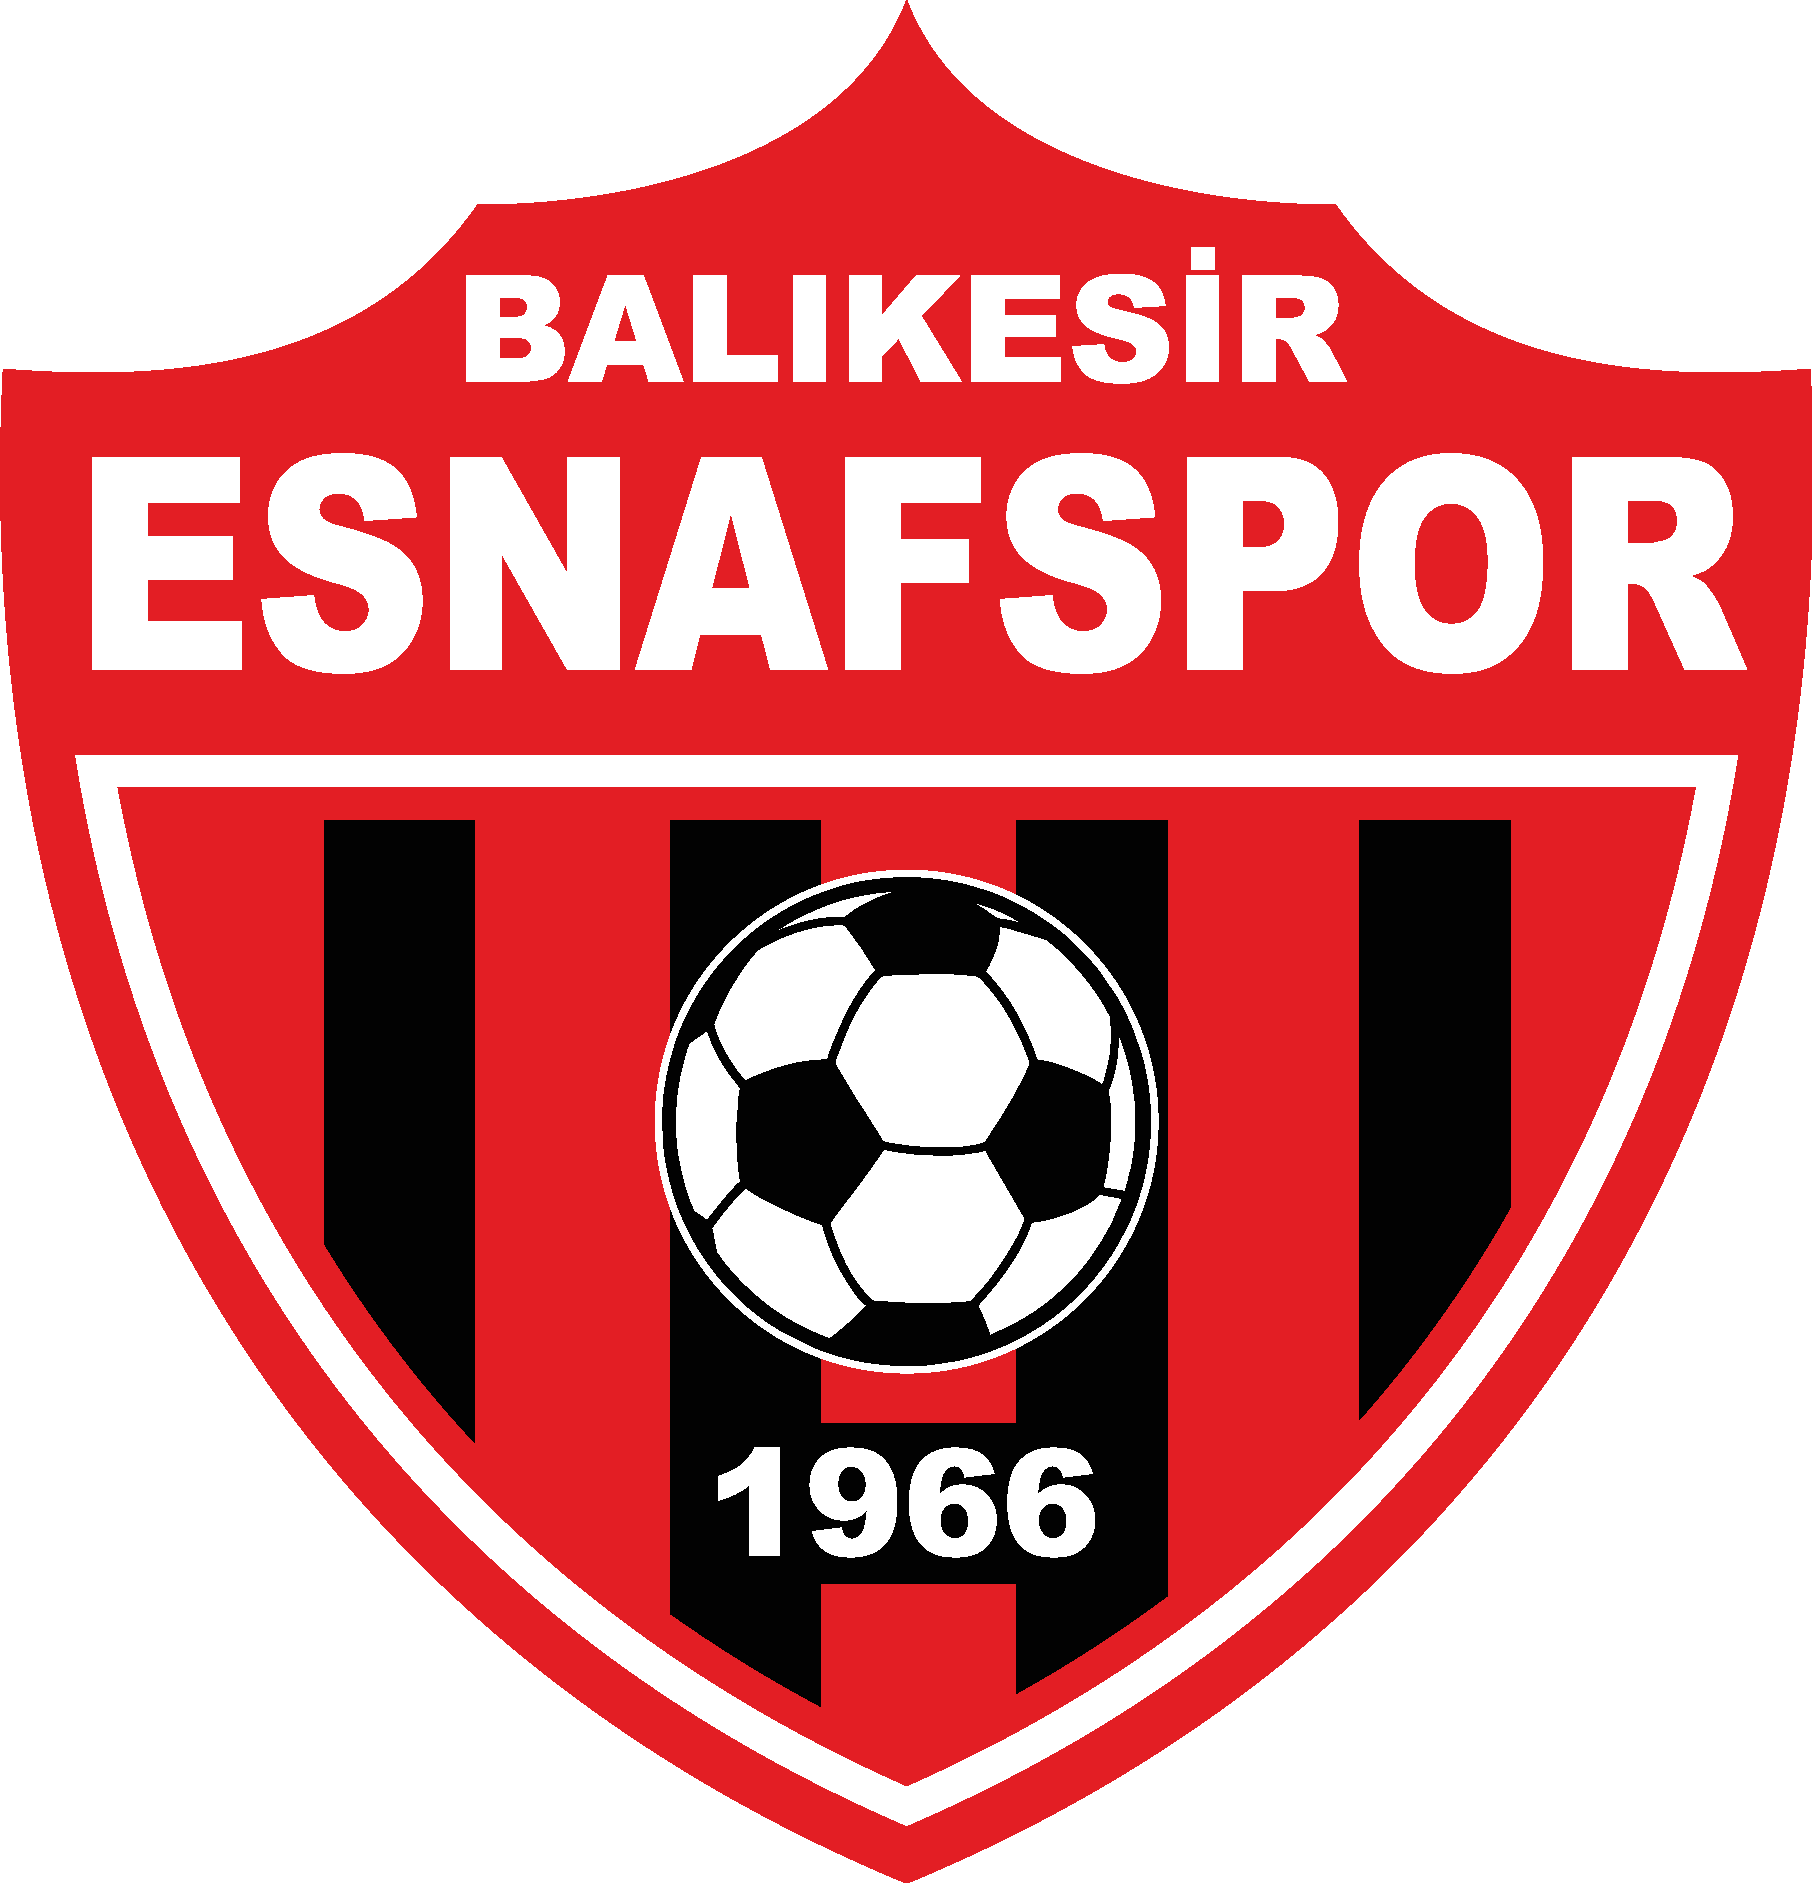 Balıkesir Esnafspor Logo Vector